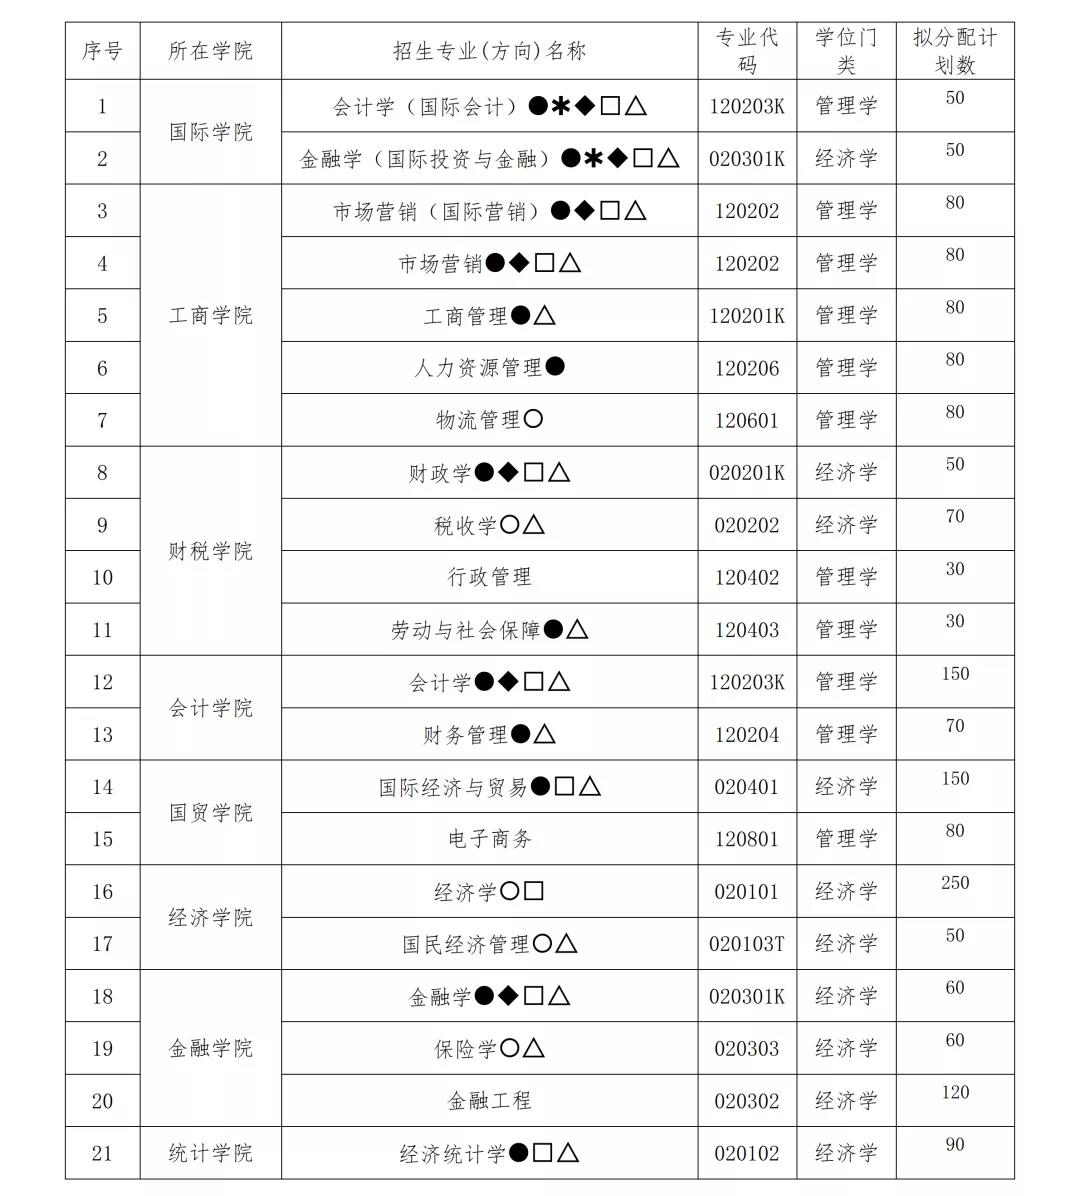 软科2020江西省大学_江西工程学院入选软科2017中国最好大学排名